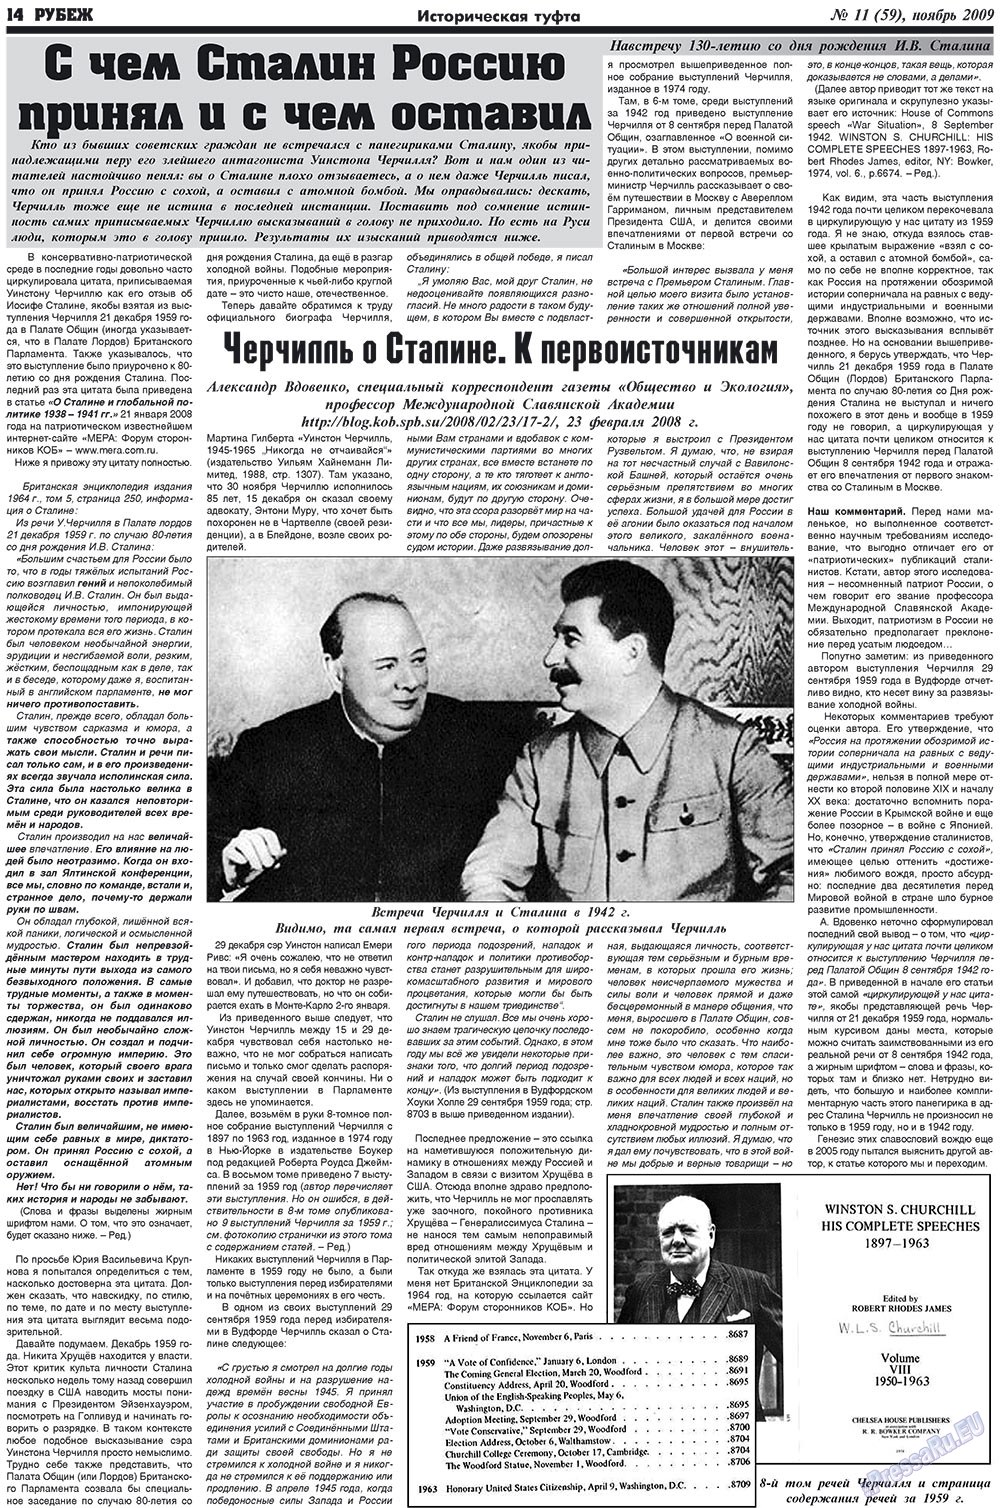 Рубеж (газета). 2009 год, номер 11, стр. 14